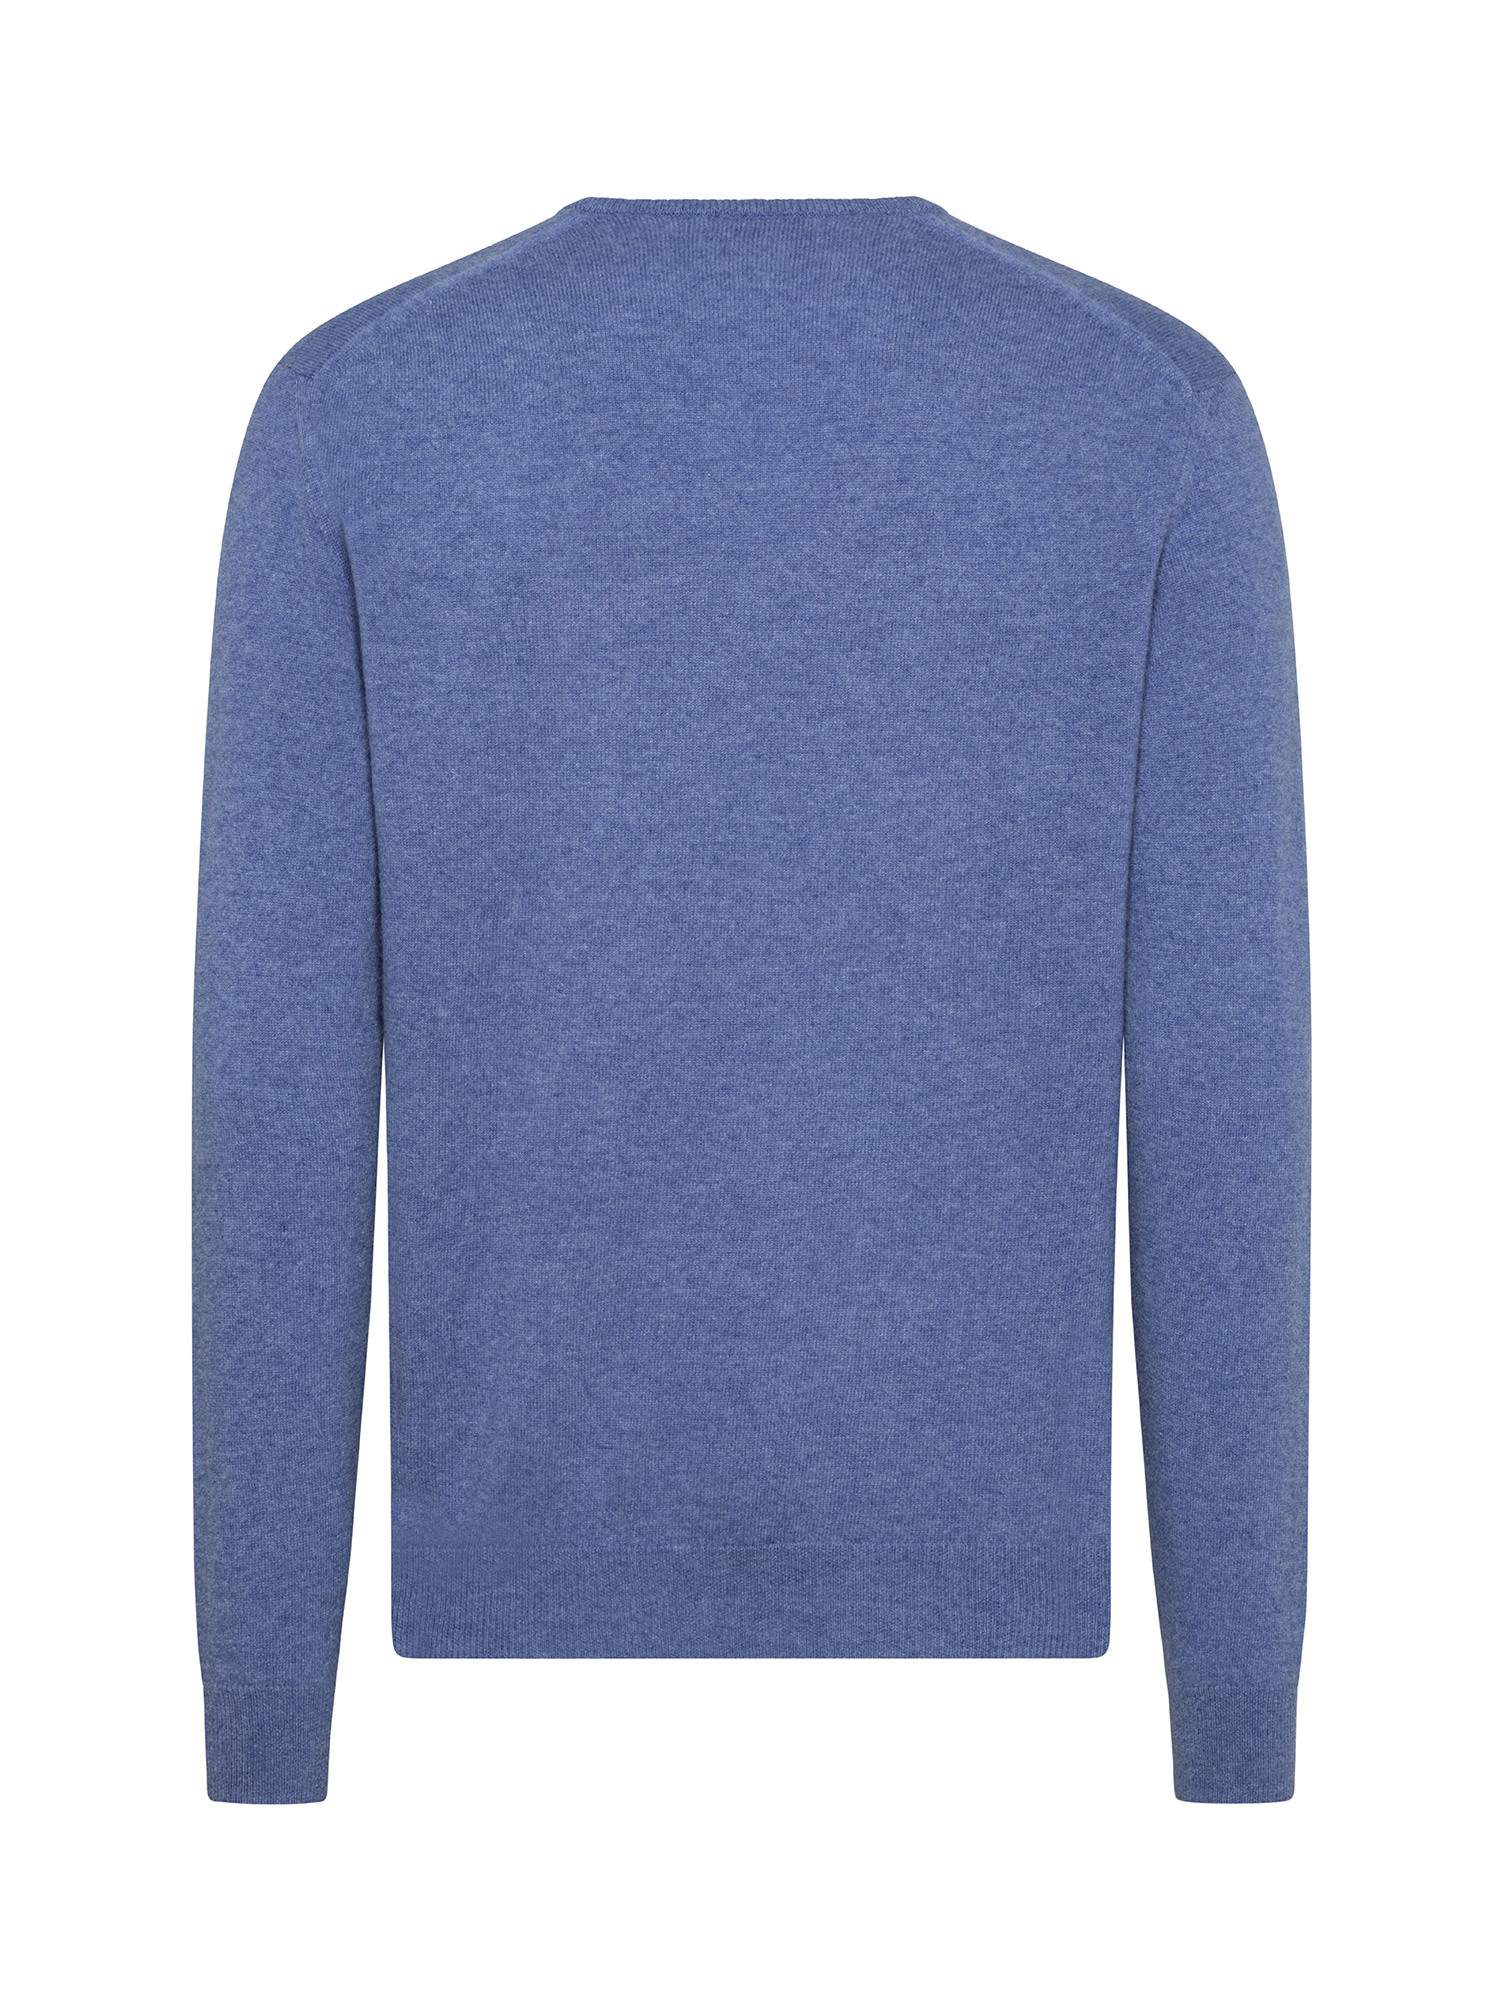 V-neck pullover in pure cashmere, Blue Celeste, large image number 1